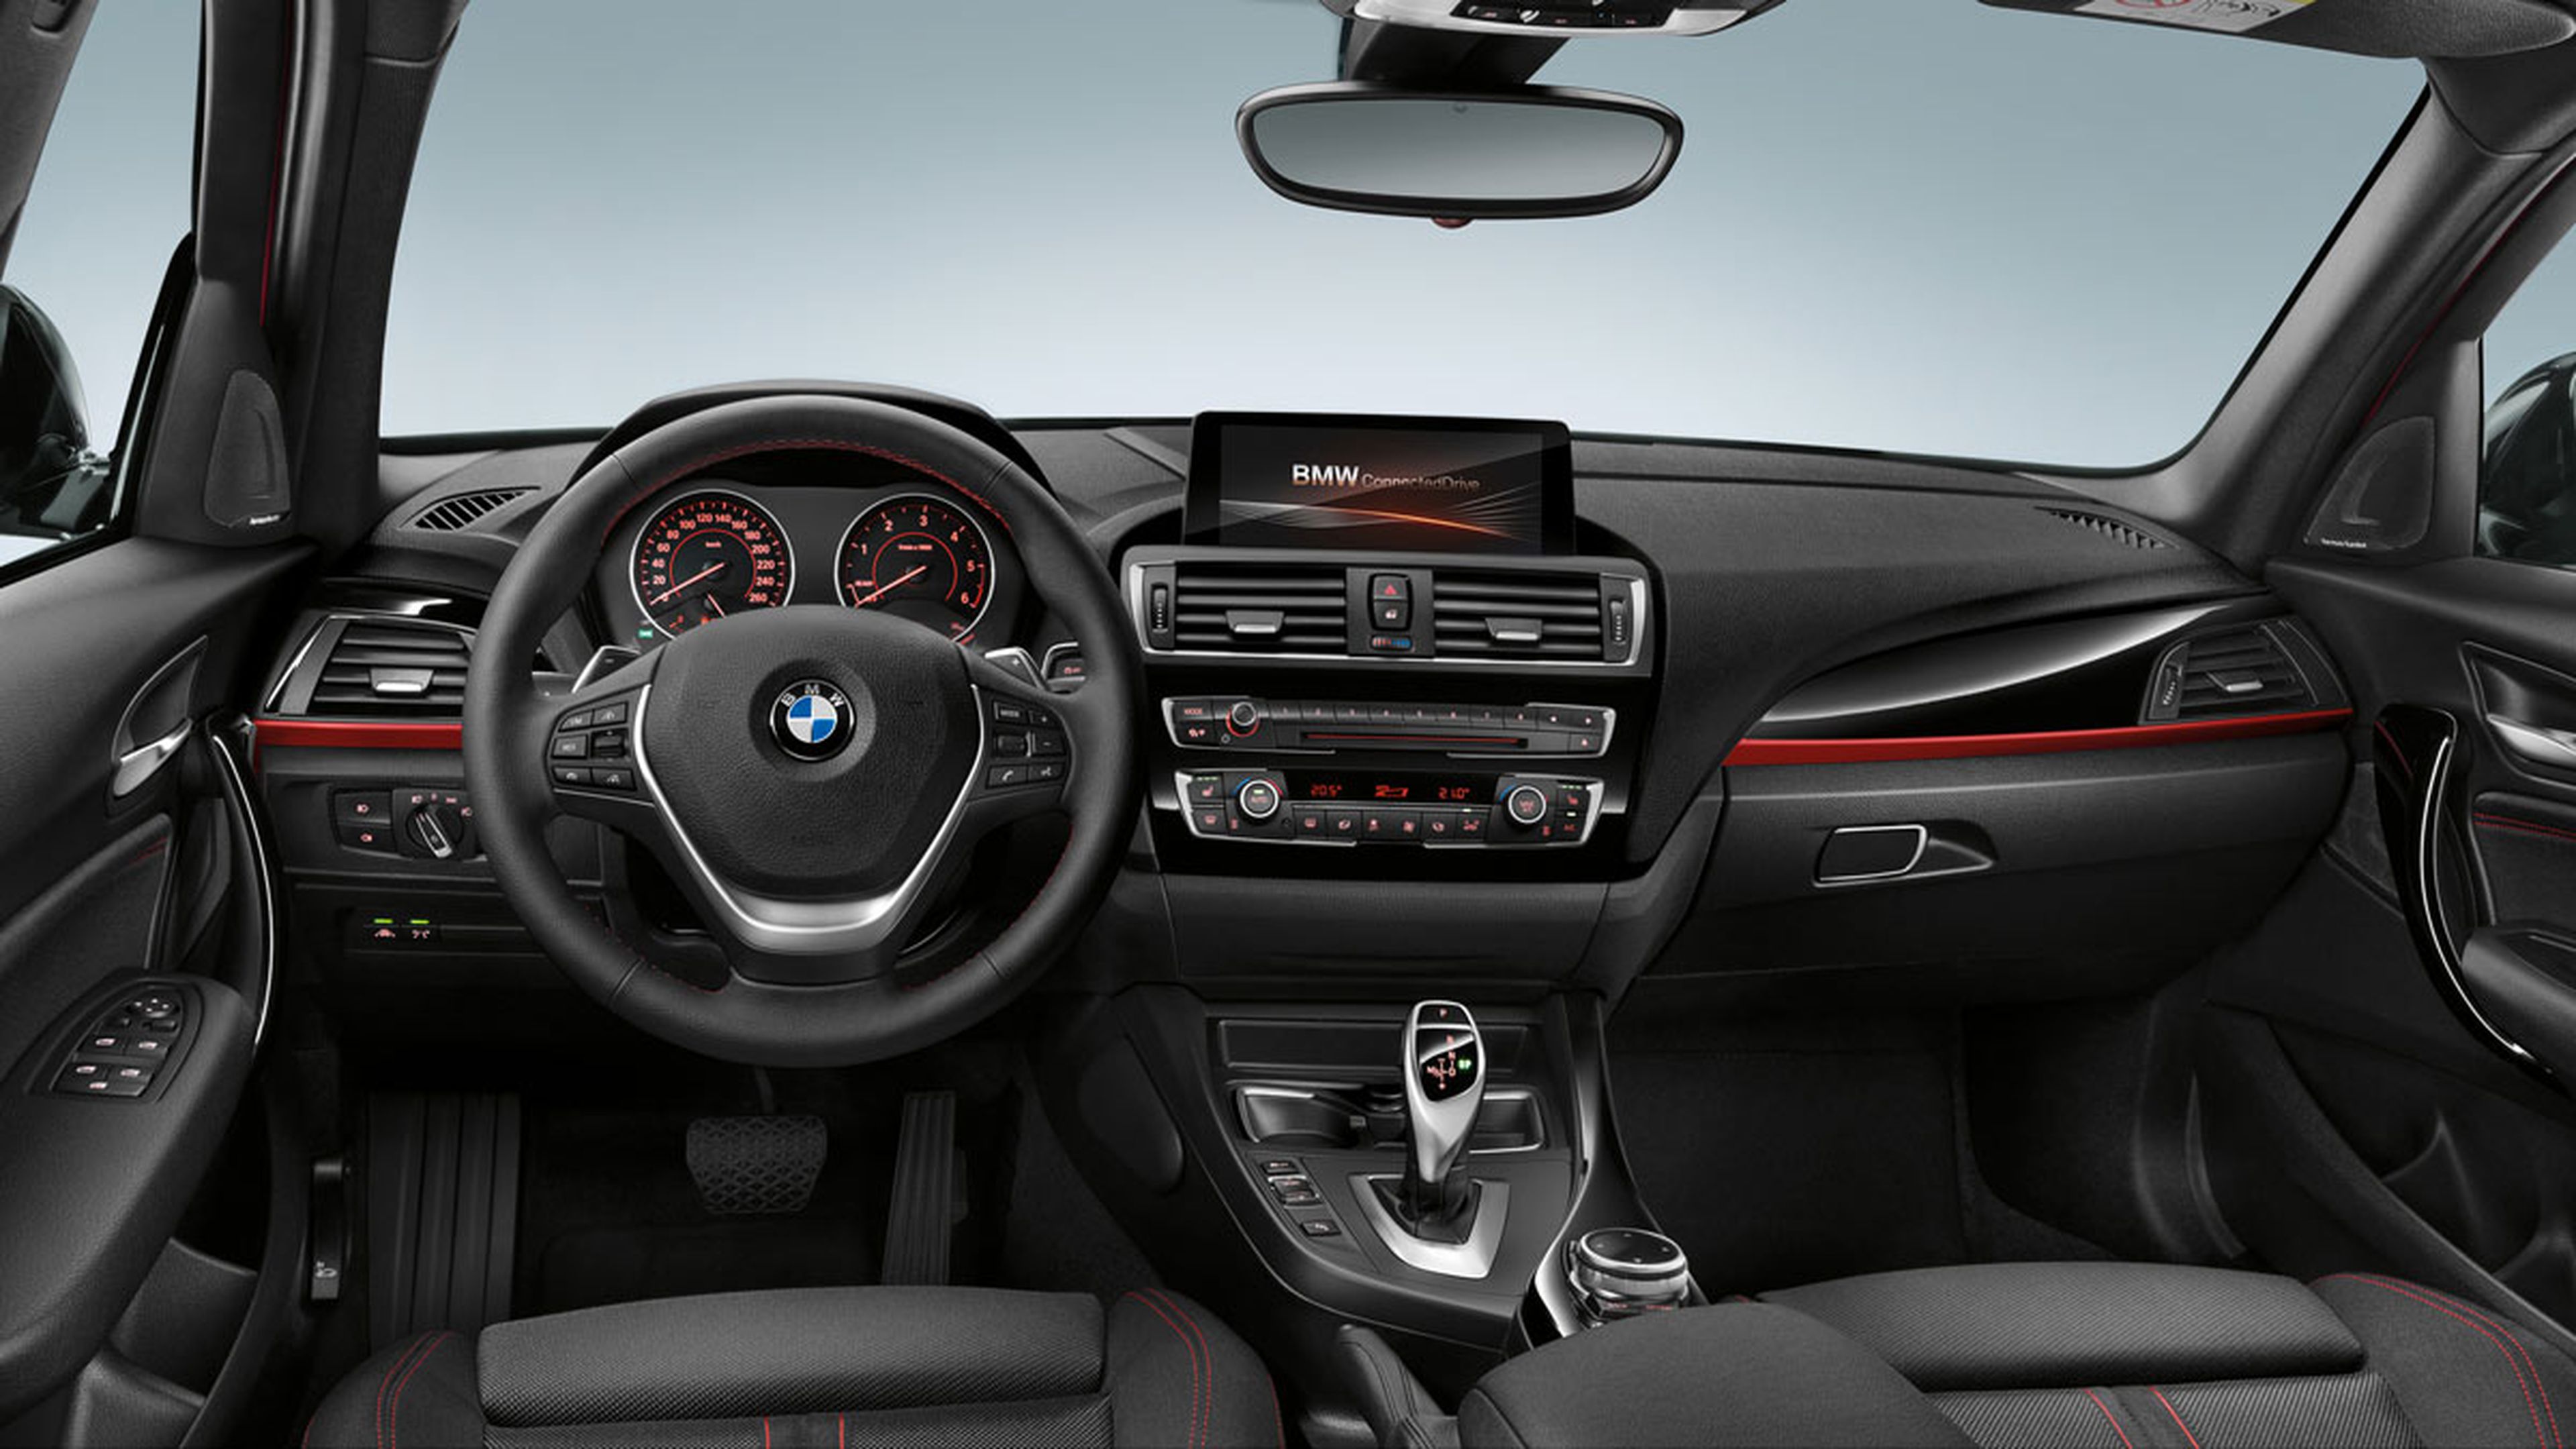 Prueba del BMW 116d 2015